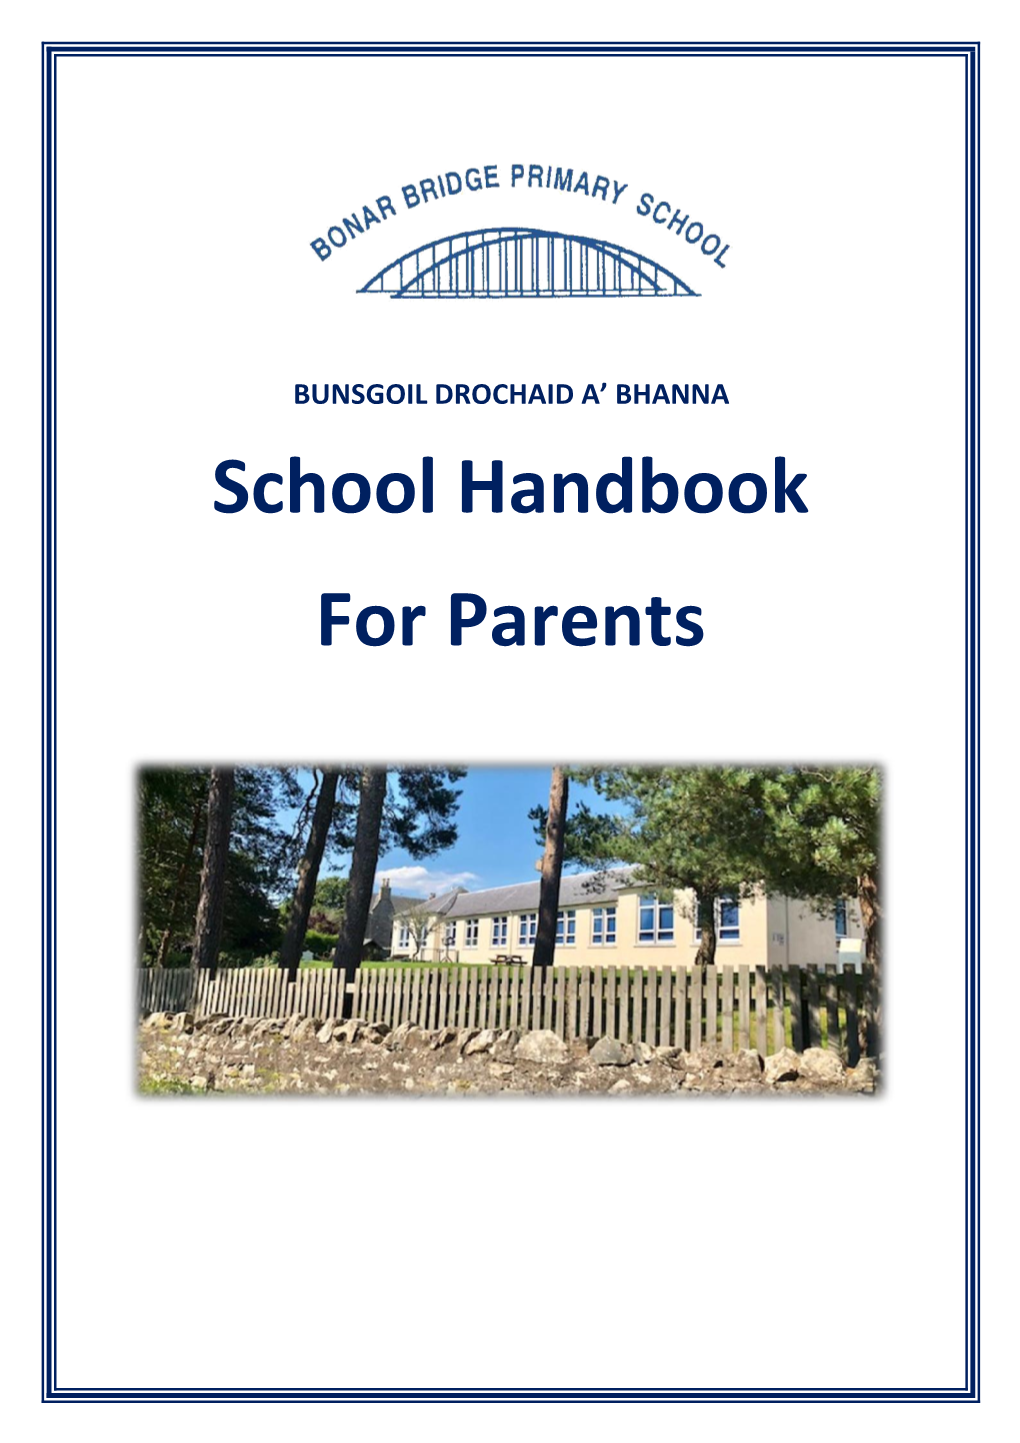 School Handbook for Parents